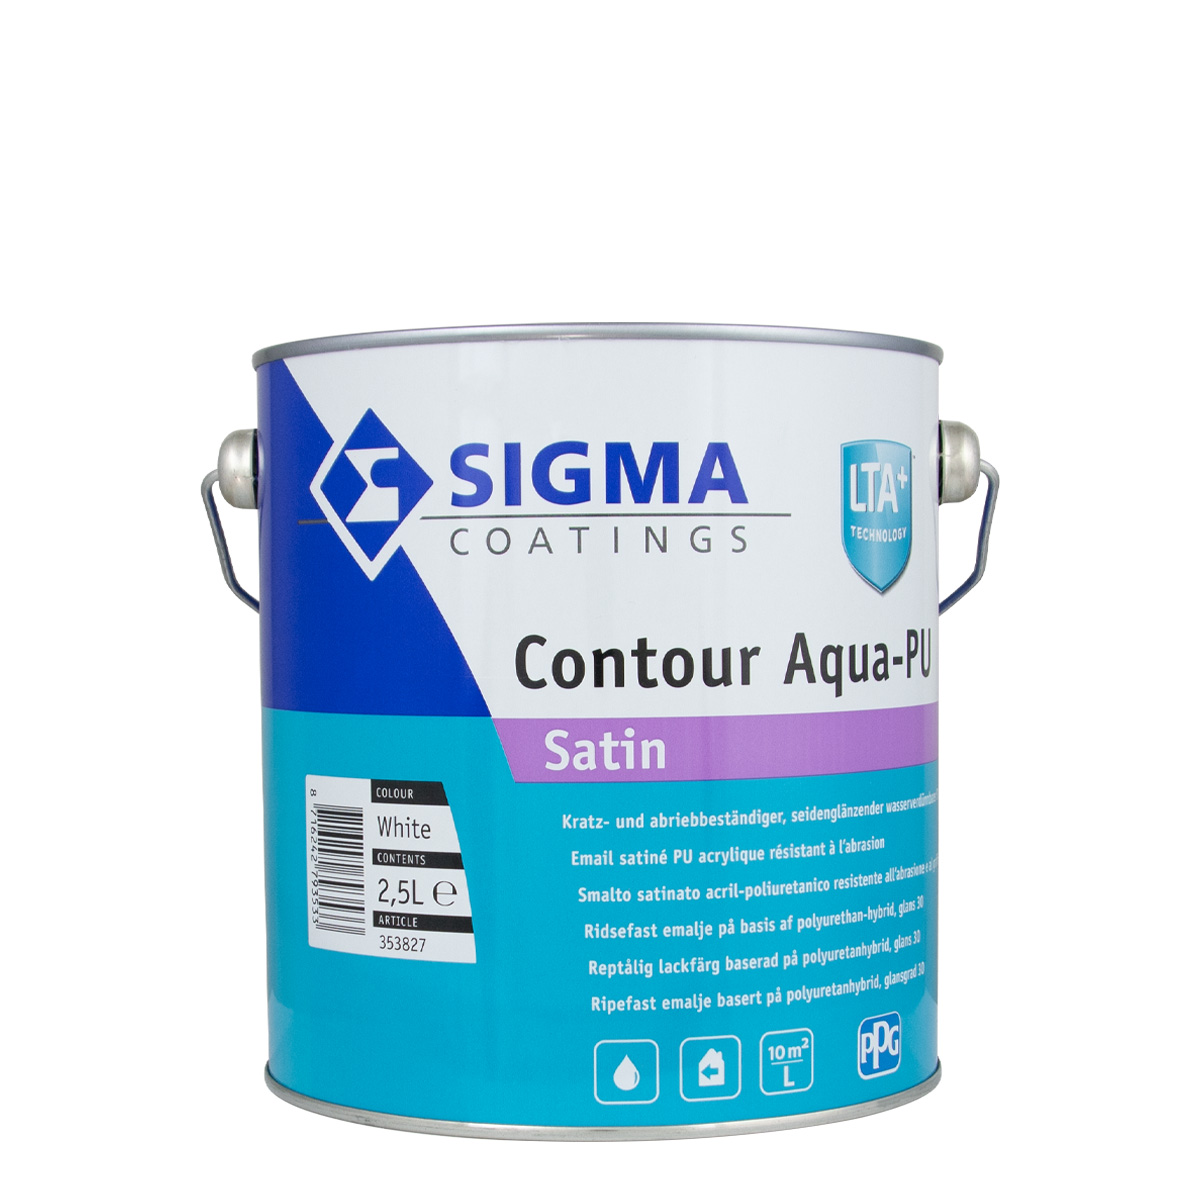 Sigma Contour Aqua-PU Satin weiss 2,5L, seidenglänzend